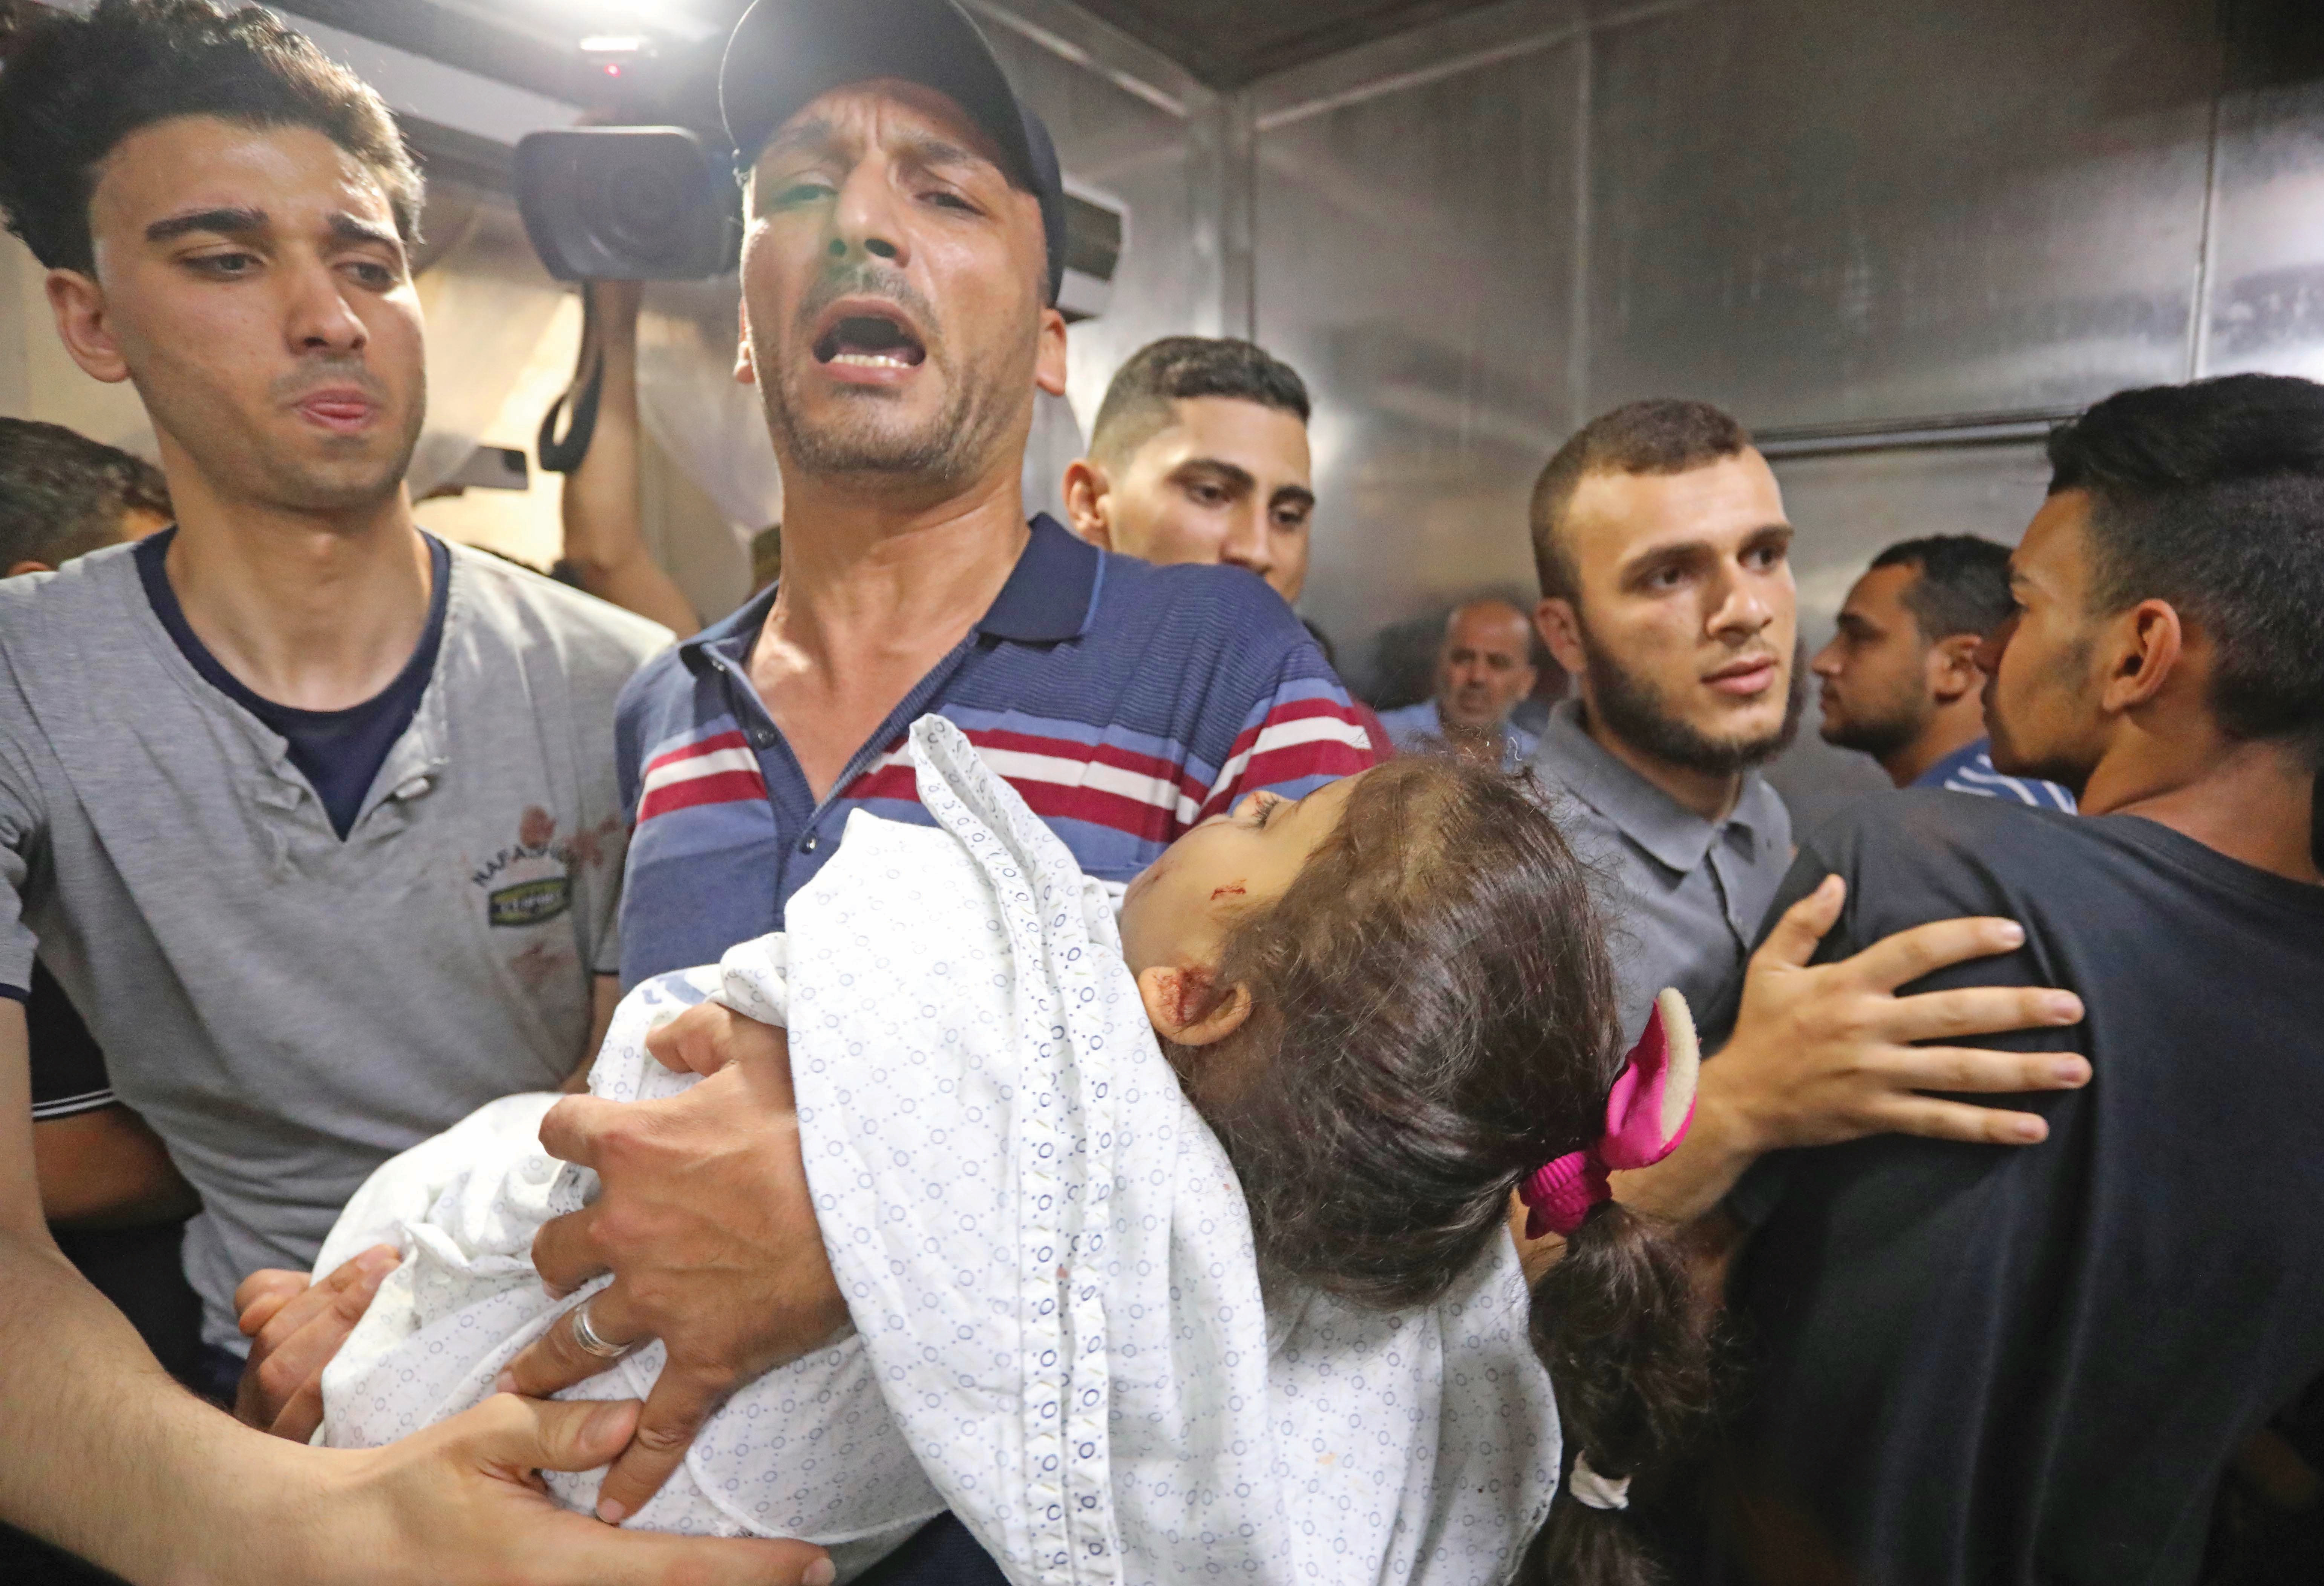 İsrail saldırısında 5 yaşındaki bir kız çocuğu da yaşamını yitirdi... Küçük kızın babası evladının cansız bedenine sarılarak gözyaşı döktü.n